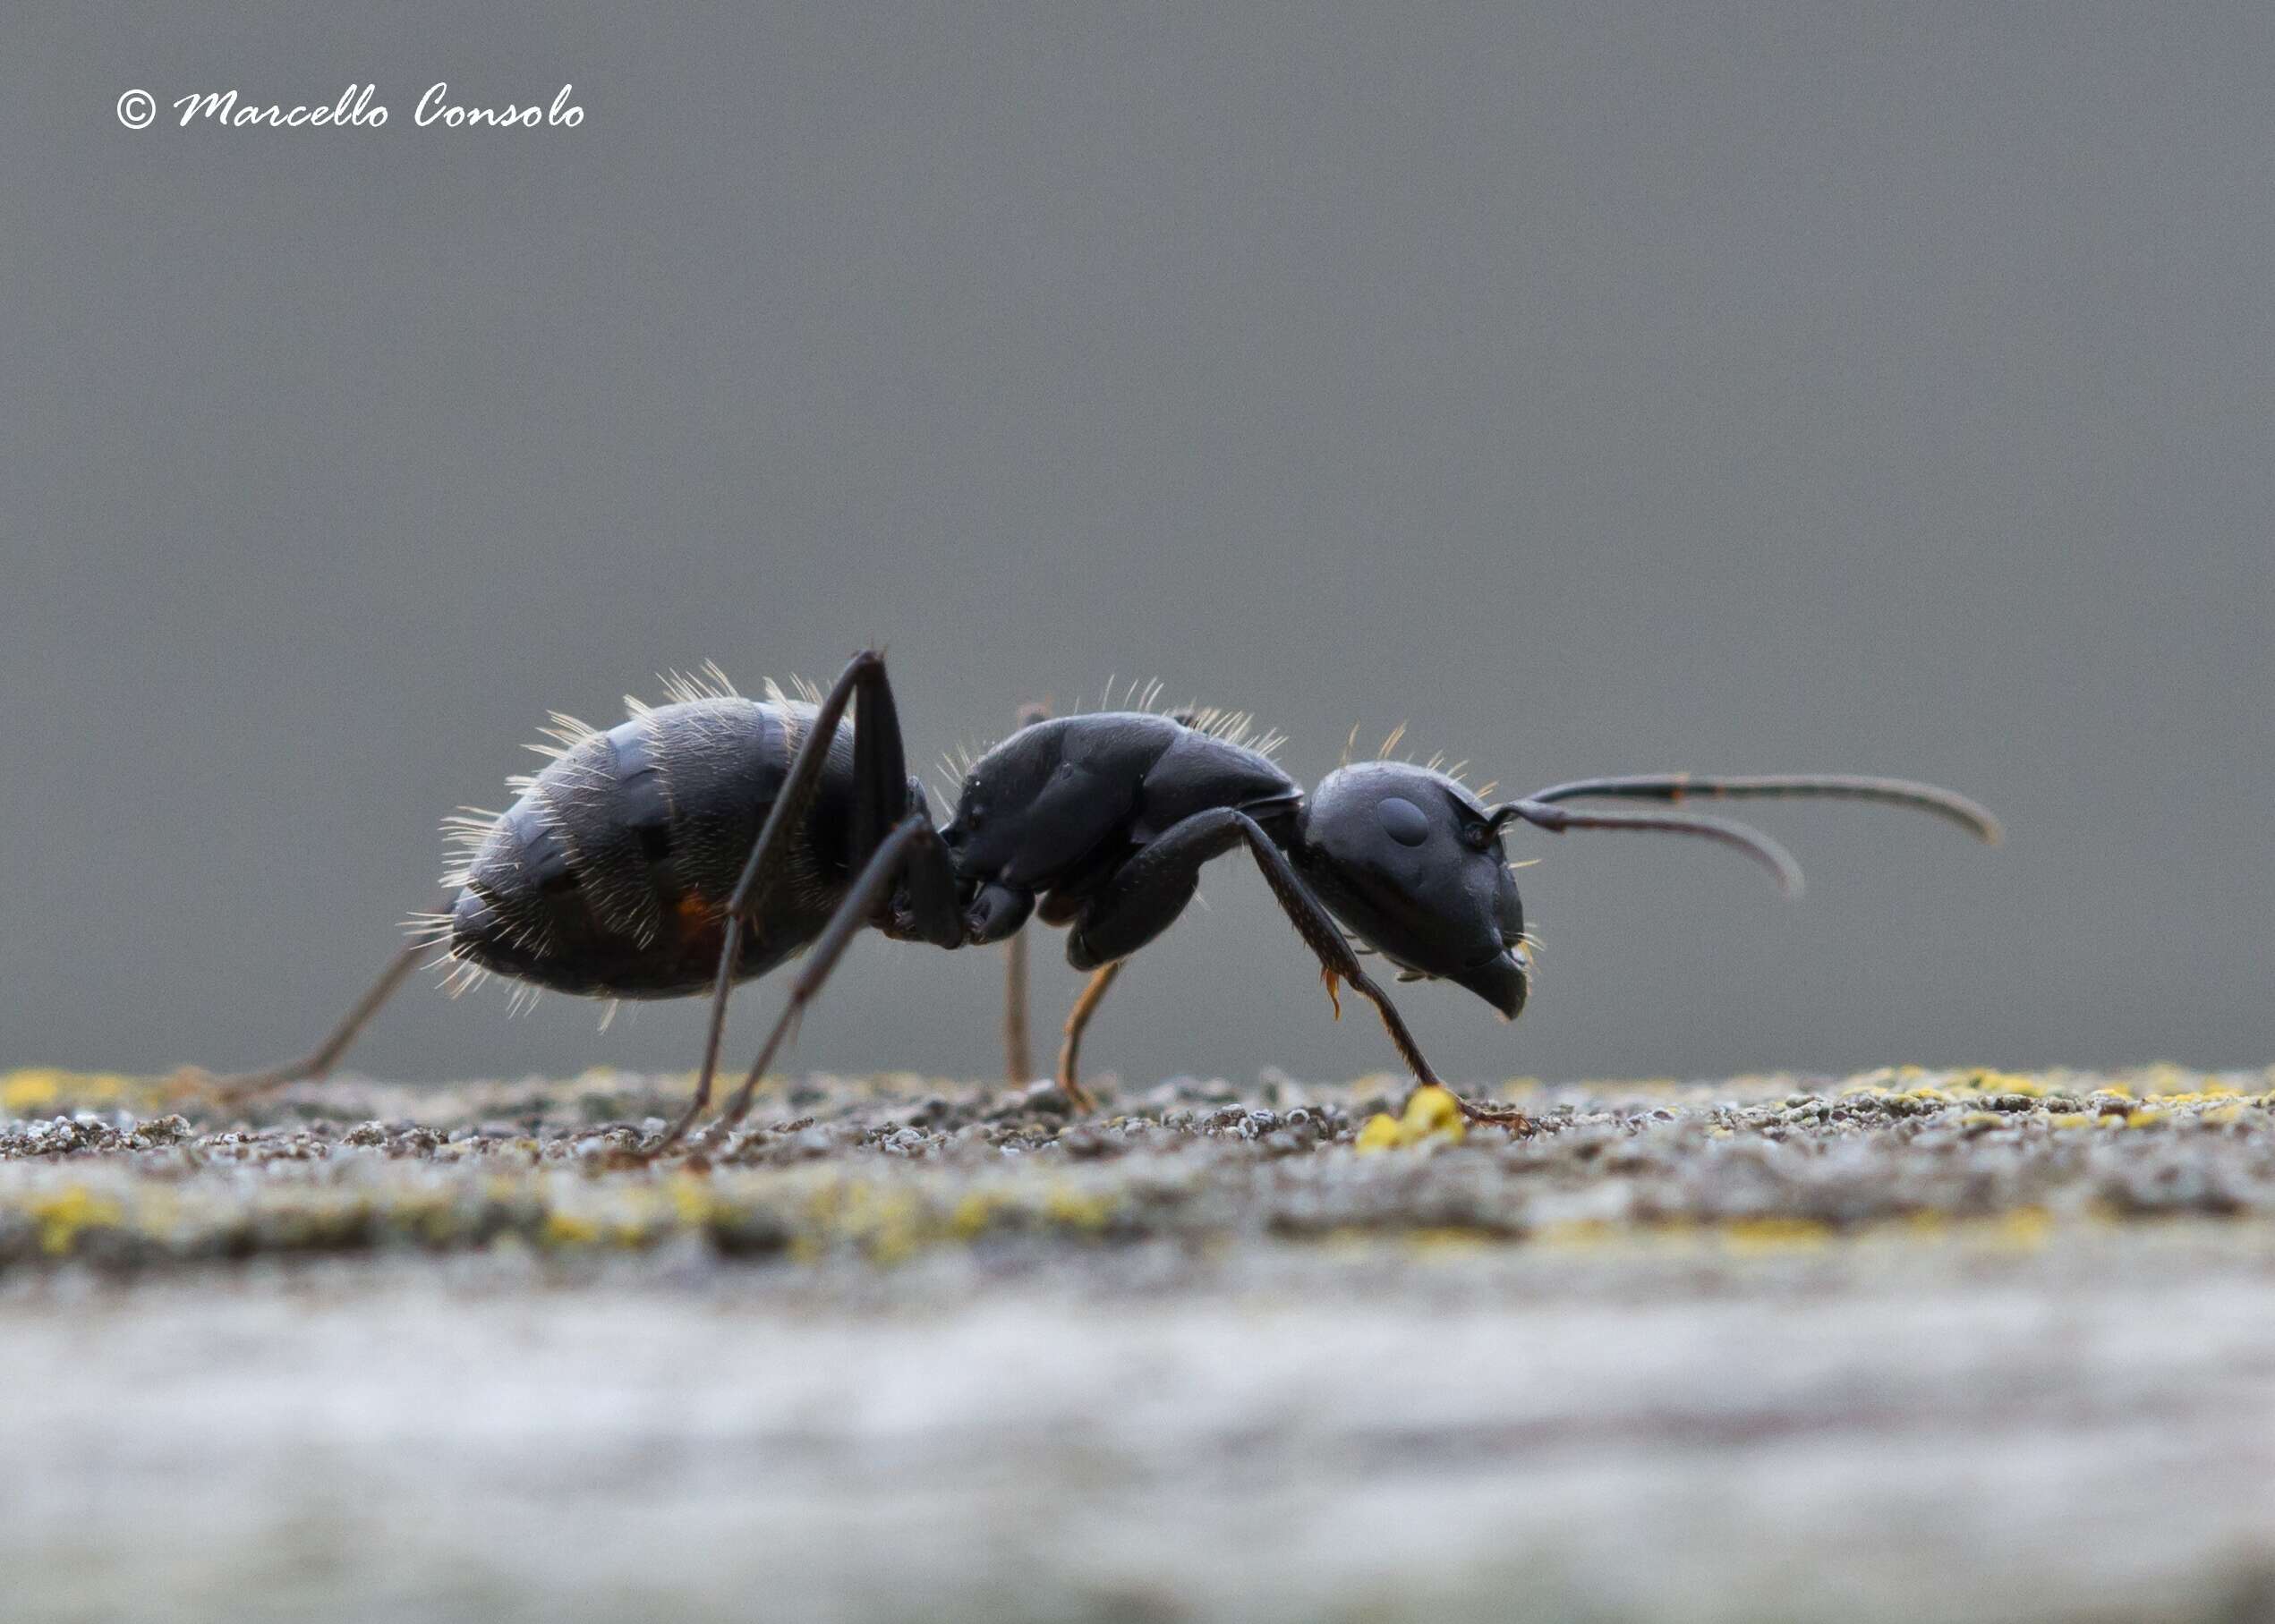 Image of Carpenter ant